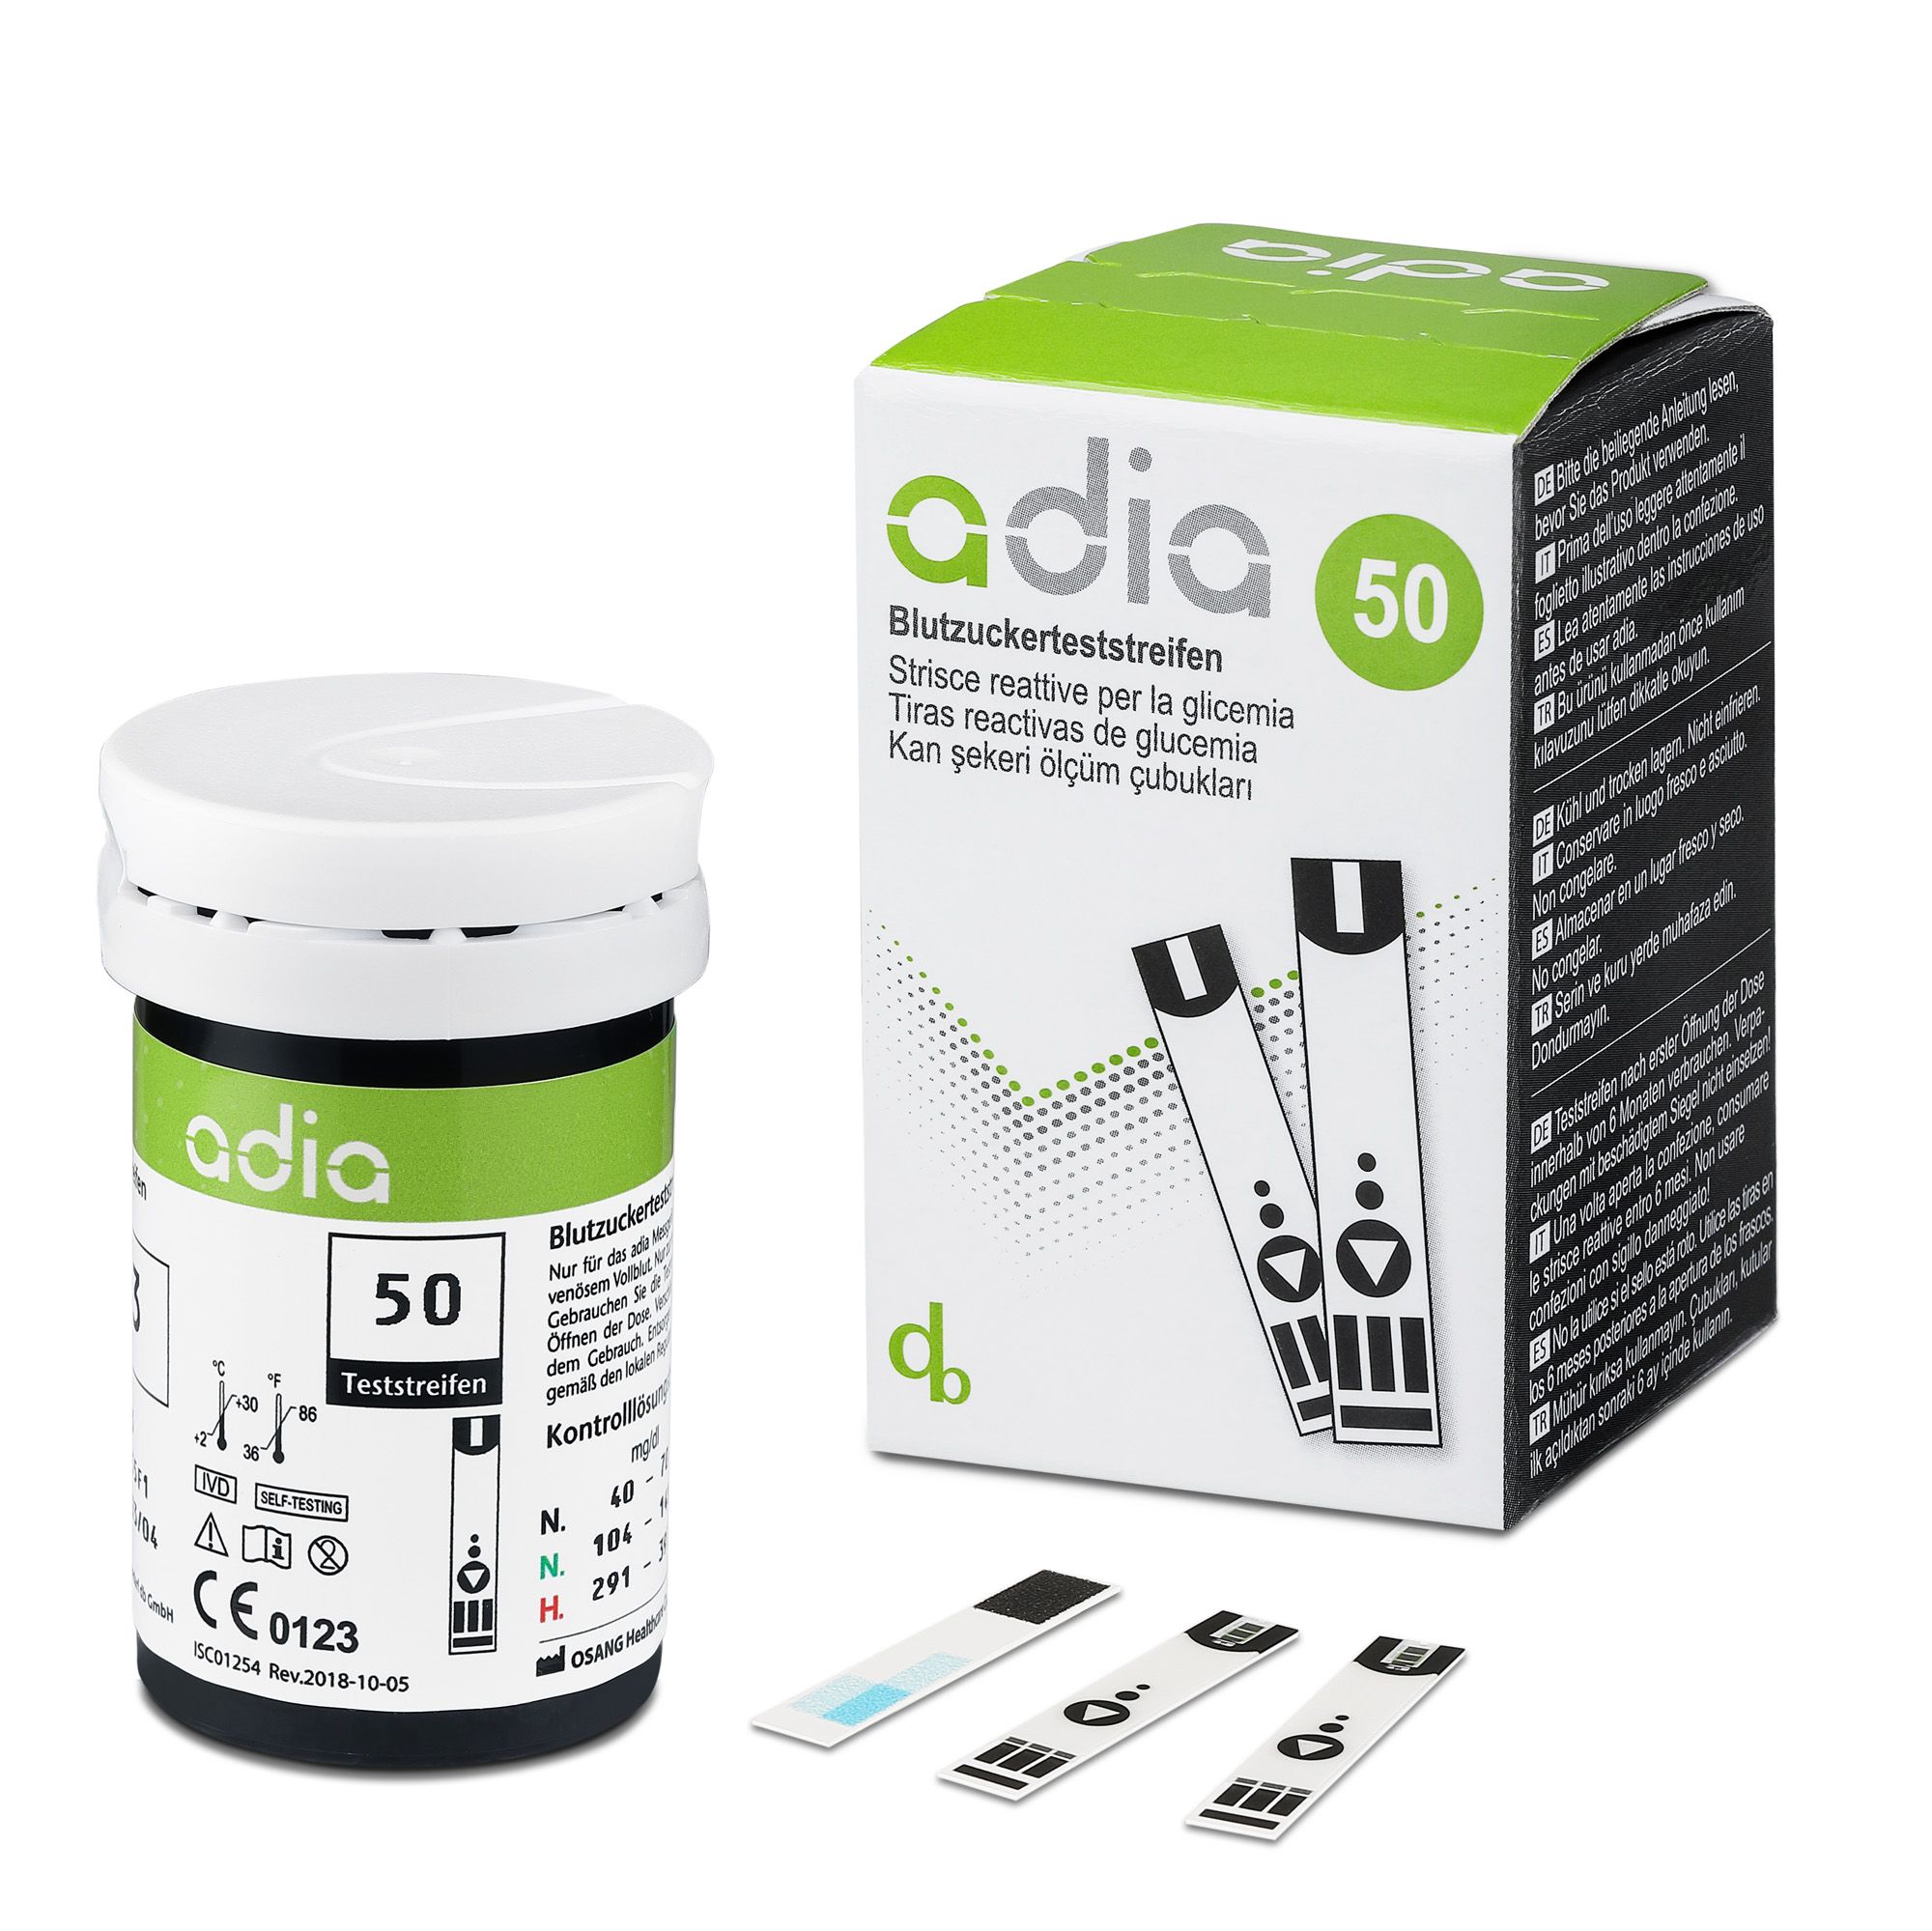 adia Blutzuckerteststreifen (60 Stück) mit Messgerät (mmol/L) und 110 Lanzetten als Komplett-Set